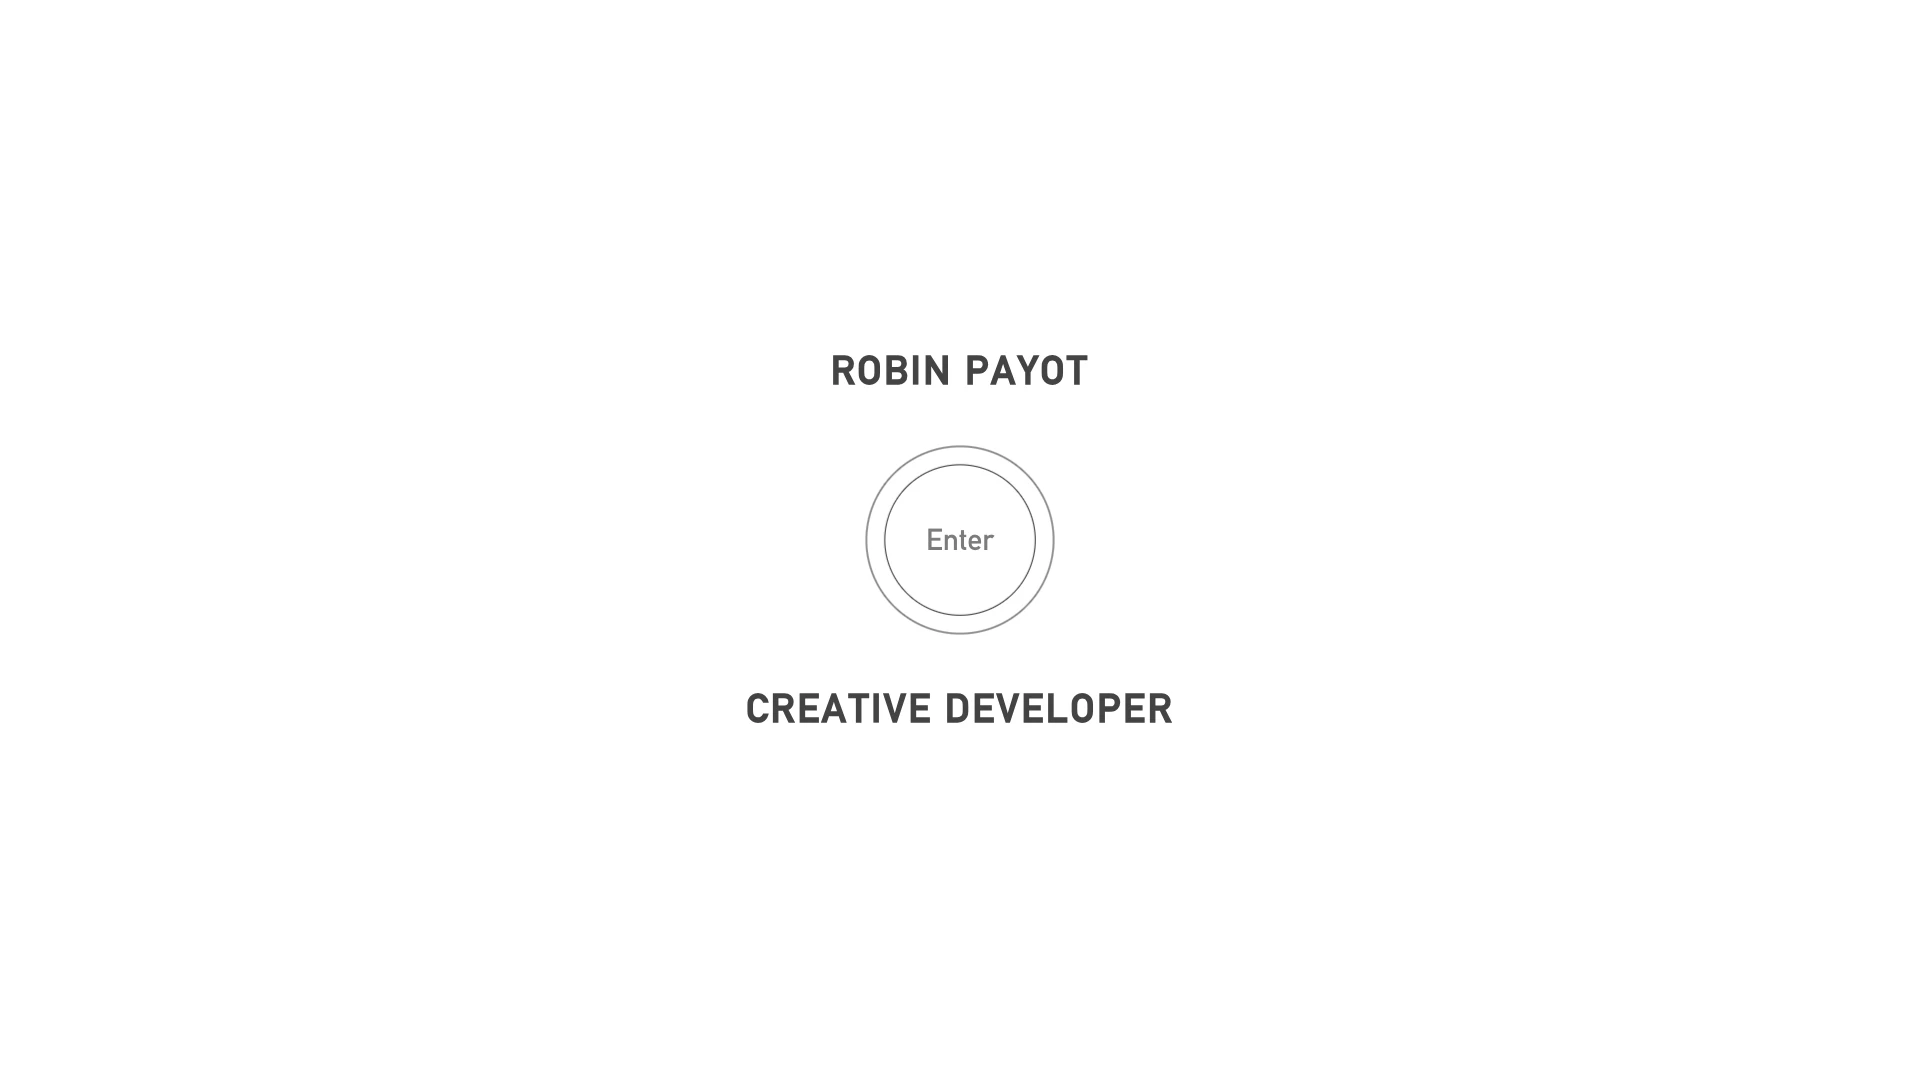 Robin Payot